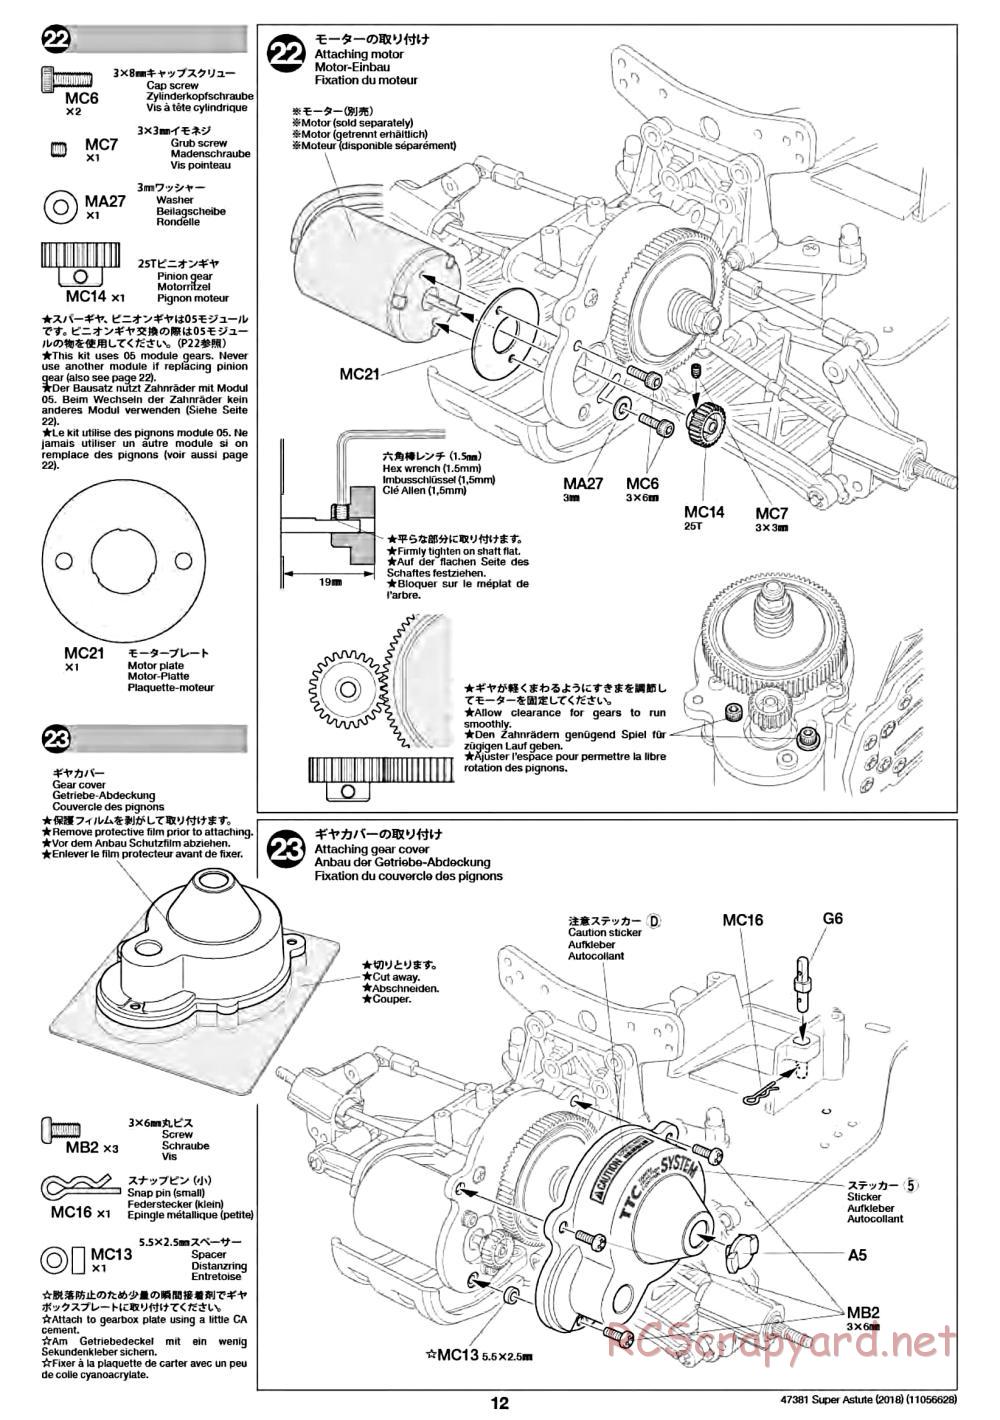 Tamiya - Super Astute (2018) Chassis - Manual - Page 12